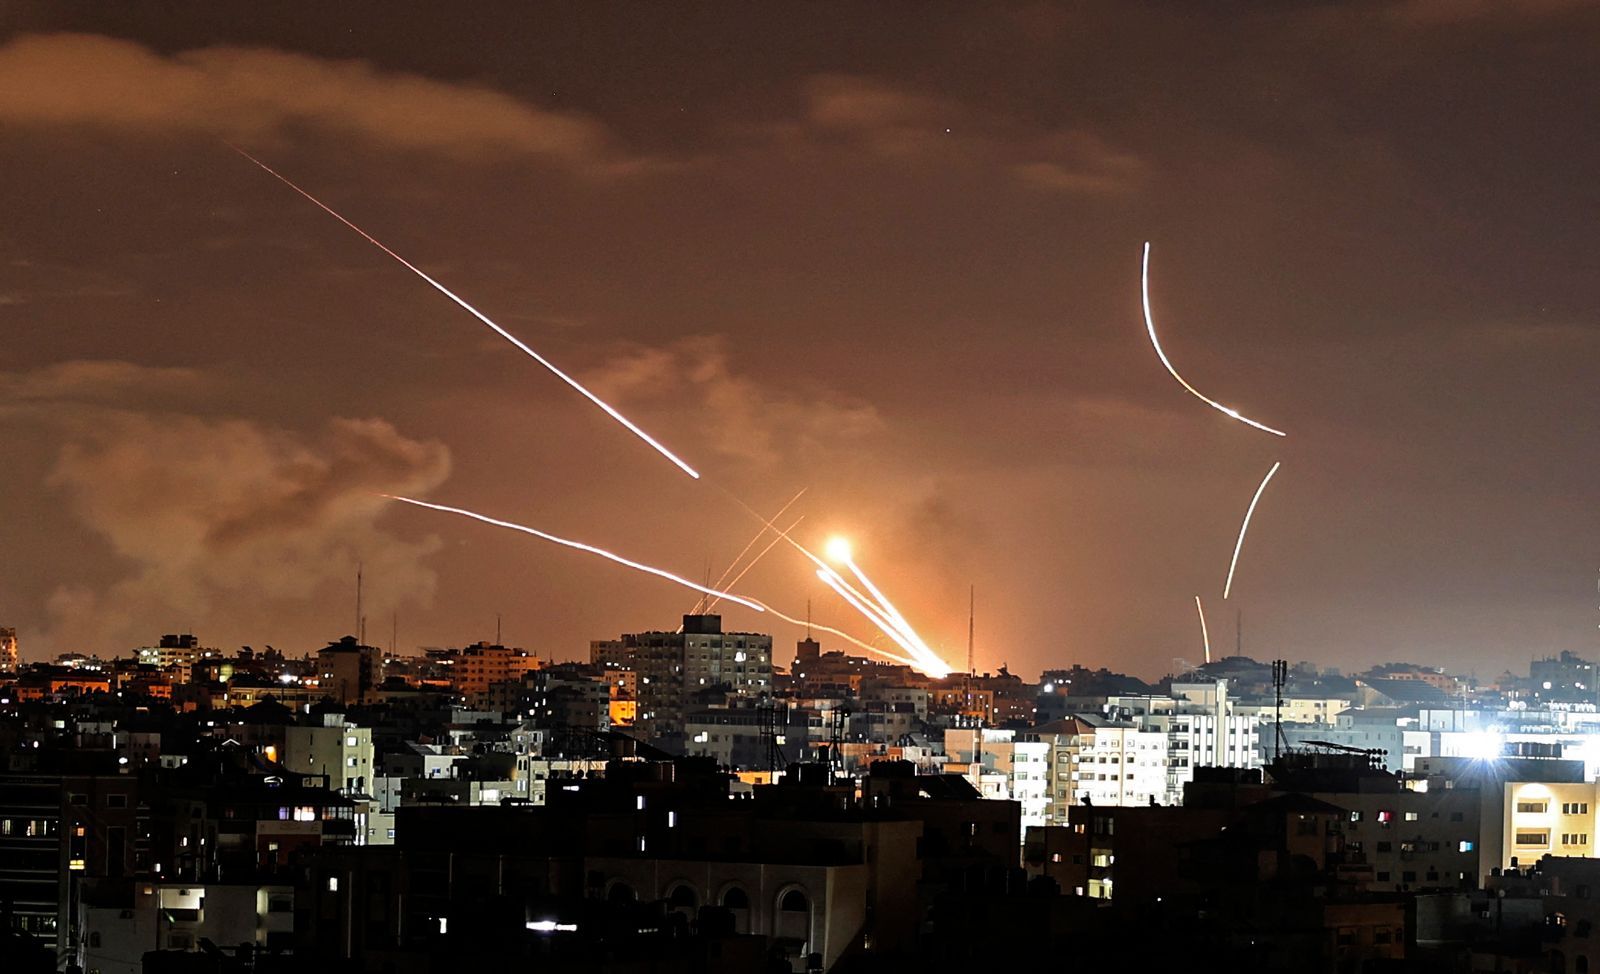 AFP - ฉนวนกาซา อิสราเอล ปาเลสไตน์ สงครามกลางเมือง